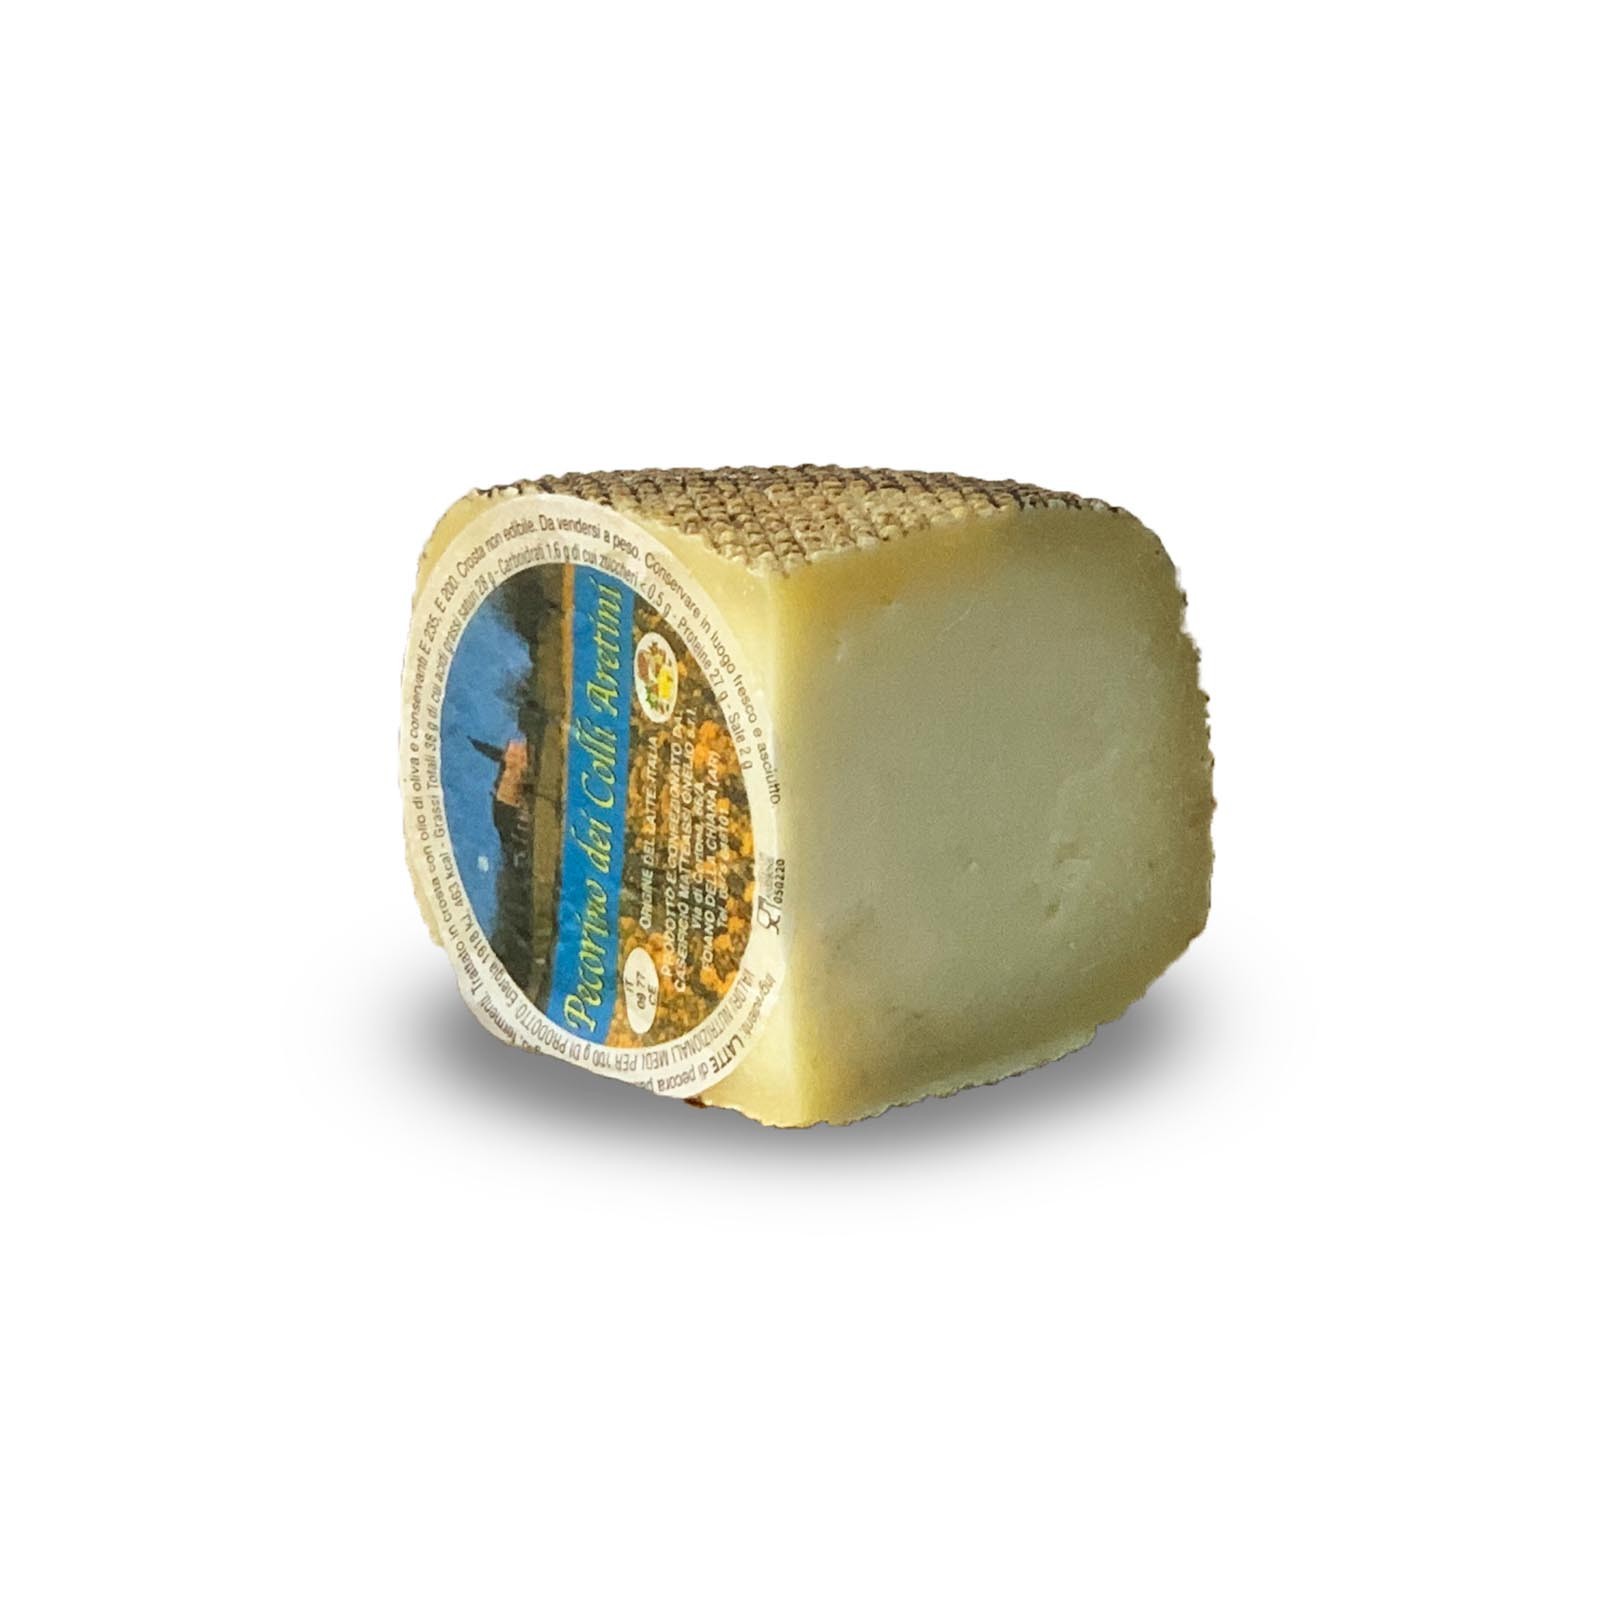 Der „Rigatello” Gereifter Toskanische Pecorino-Käse ist eine der am meisten geschätzten toskanischen Spitzenleistungen nicht nur in Italien, sondern auch im Ausland. Ausschließlich aus pasteurisierter Schafsmilch und traditionellen Zutaten hergestellt, reift er etwa 120 Tage, damit er seinen charakteristischen intensiven Geschmack annehmen kann, der sowohl zu Tisch als auch gerieben auf Gerichten gut passt.